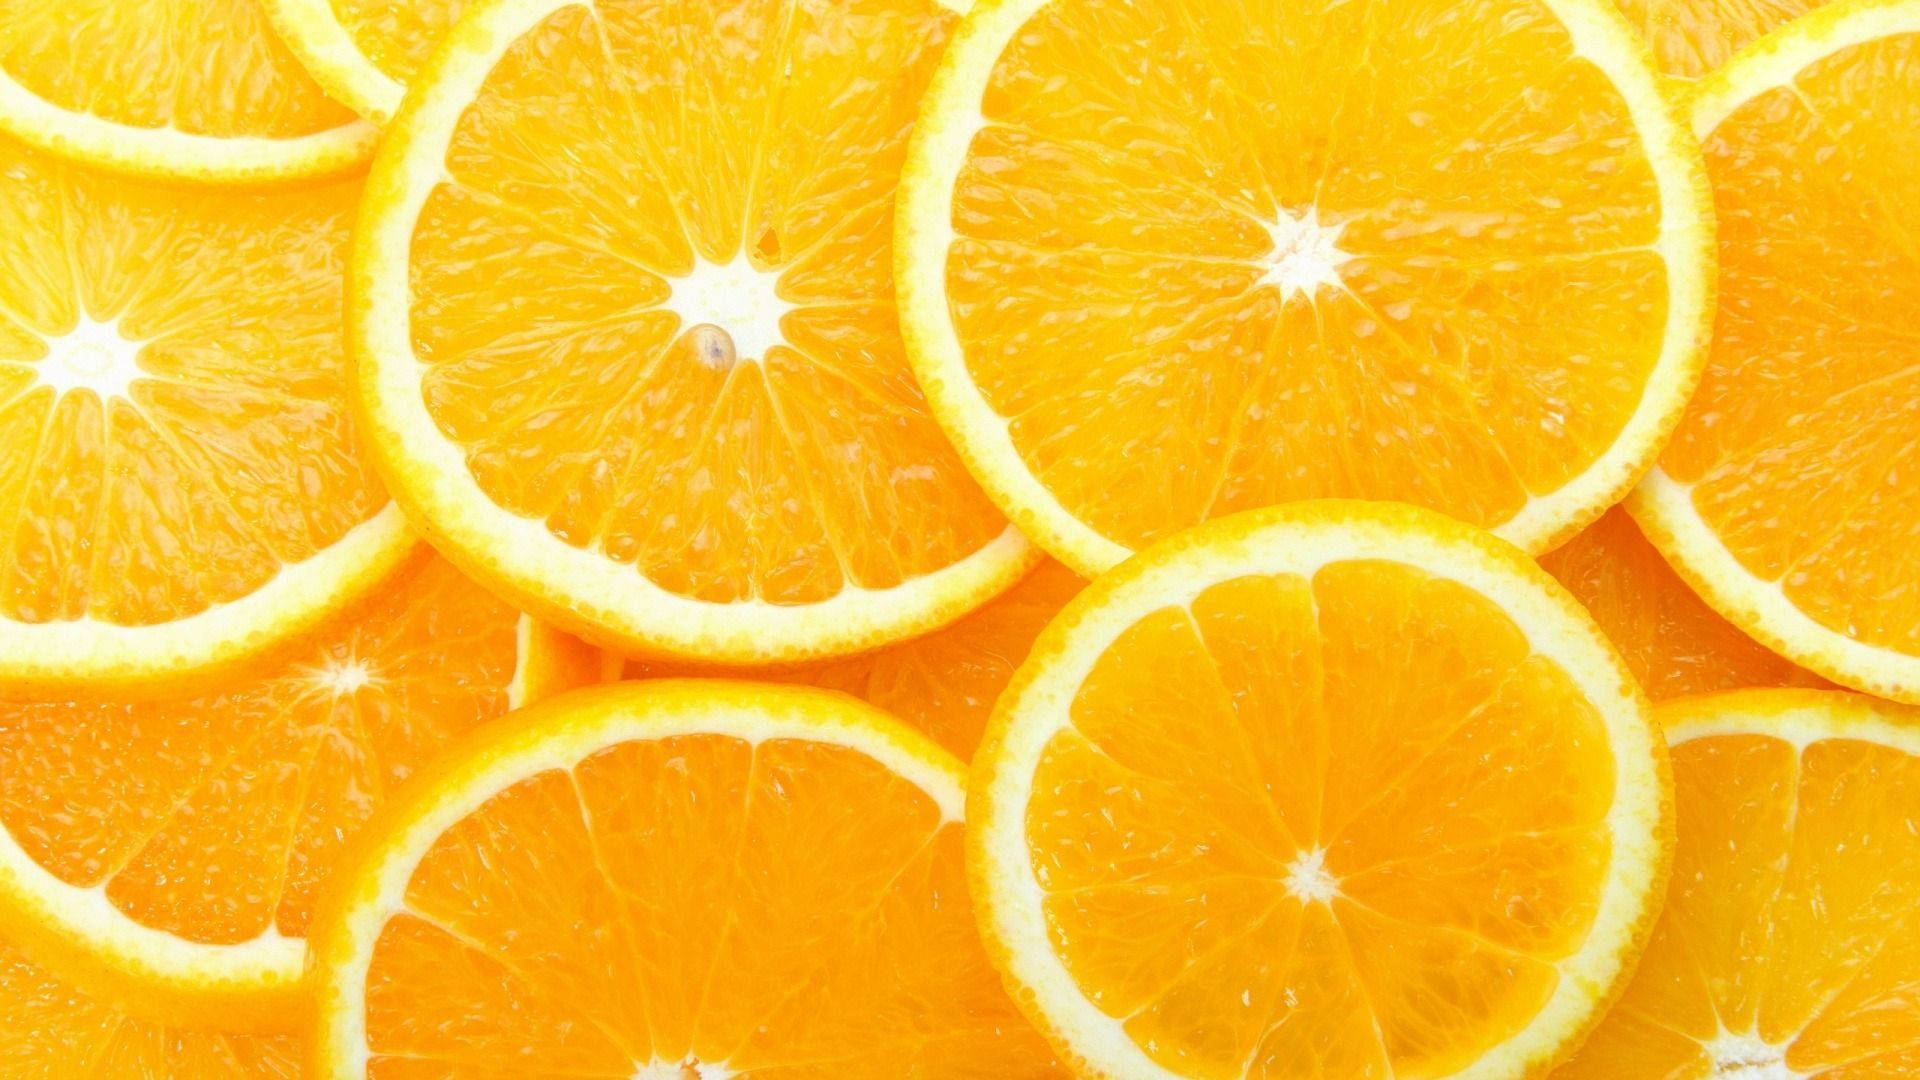 Free Orange Wallpaper Downloads, [800+] Orange Wallpapers for FREE |  